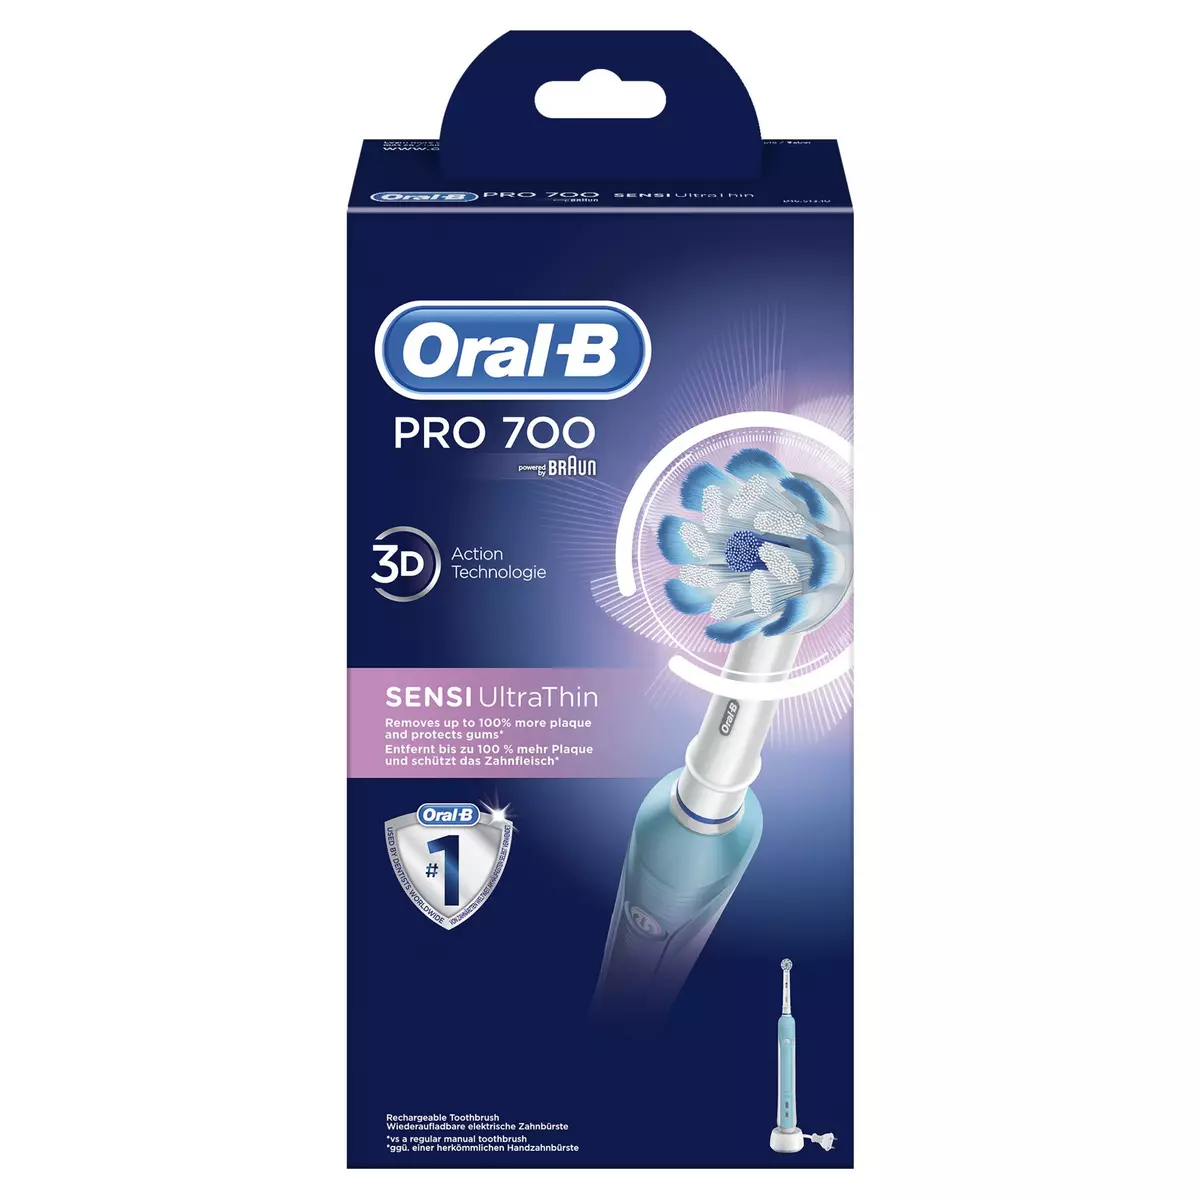 ORAL-B Brosse à dent électrique PRO 700 Sensi UltraThin 1 brosse